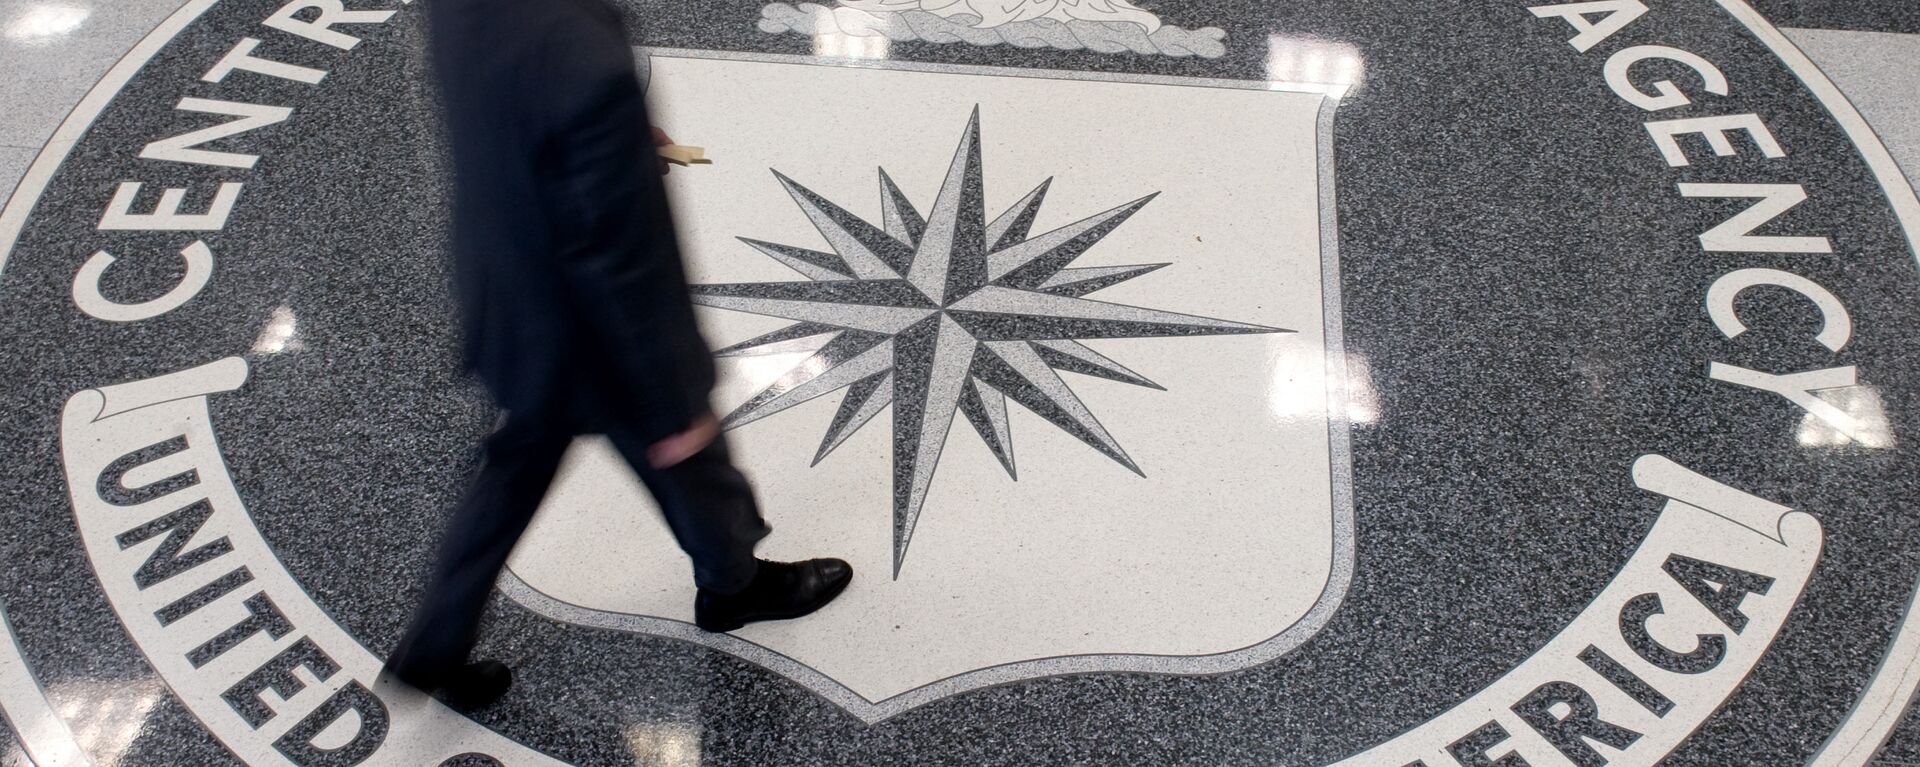 El logo de la CIA - Sputnik Mundo, 1920, 28.06.2019